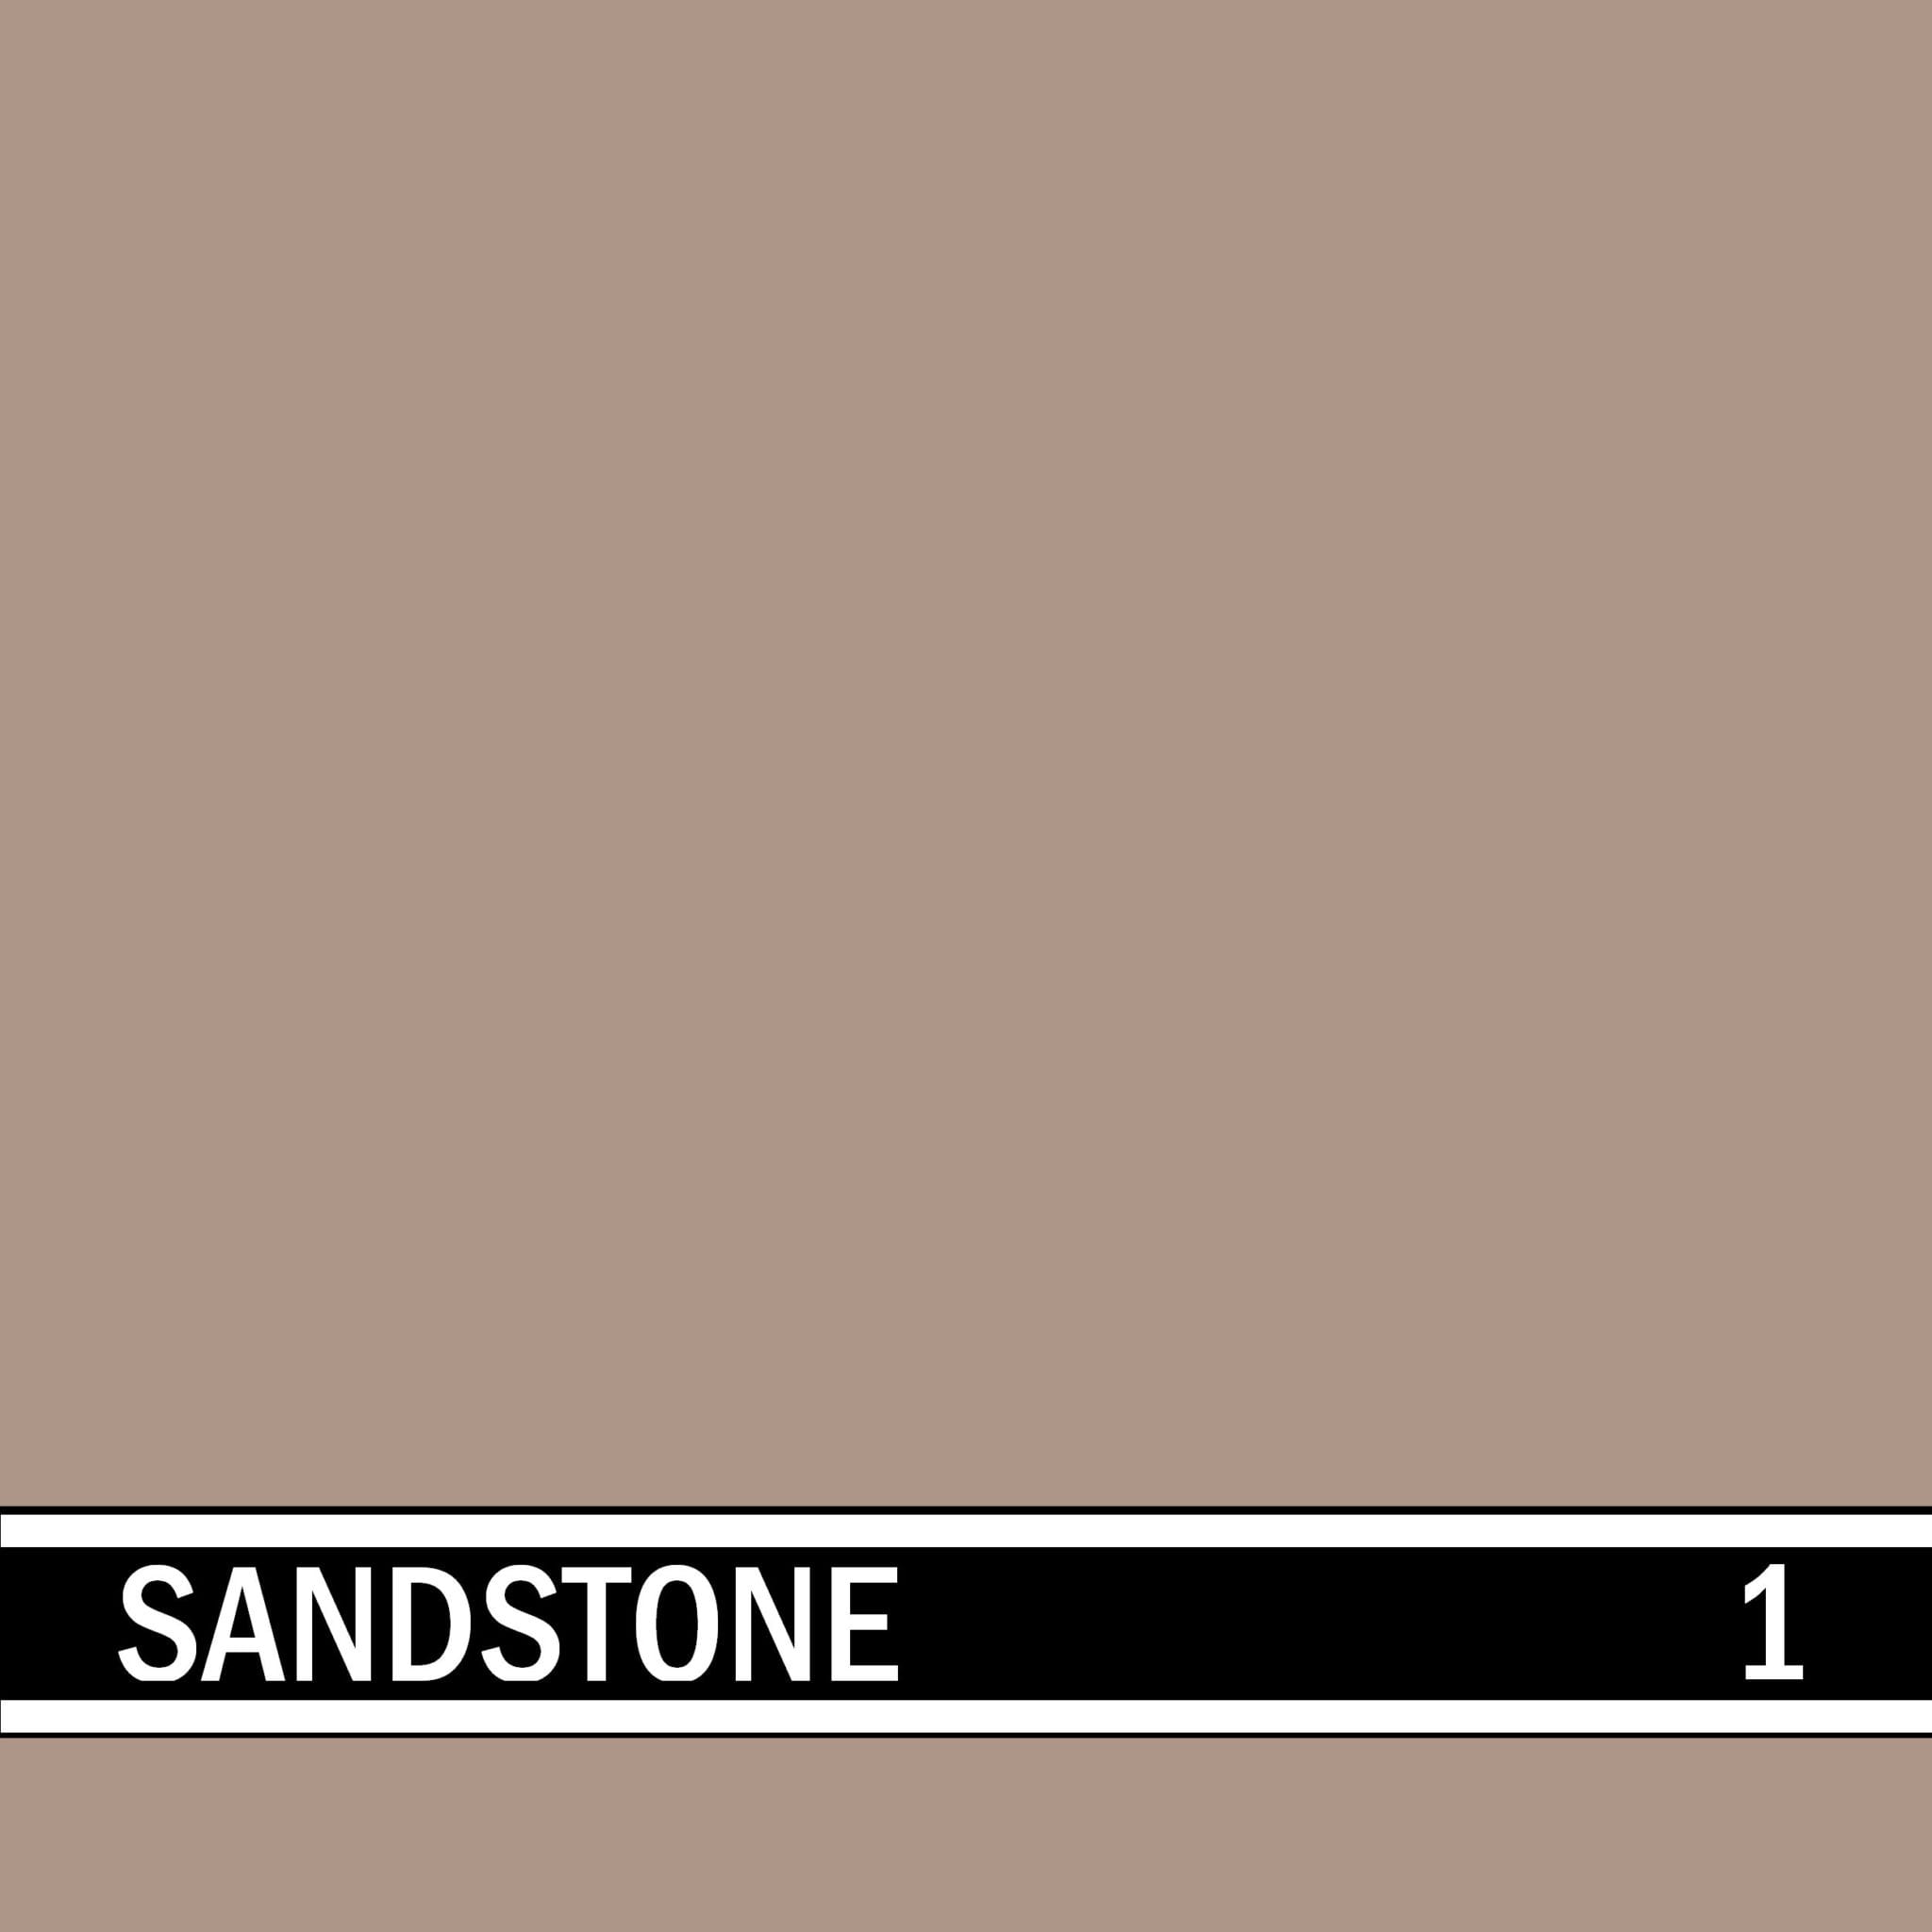 Sandstone integral concrete color for stamped concrete and decorative colored concrete